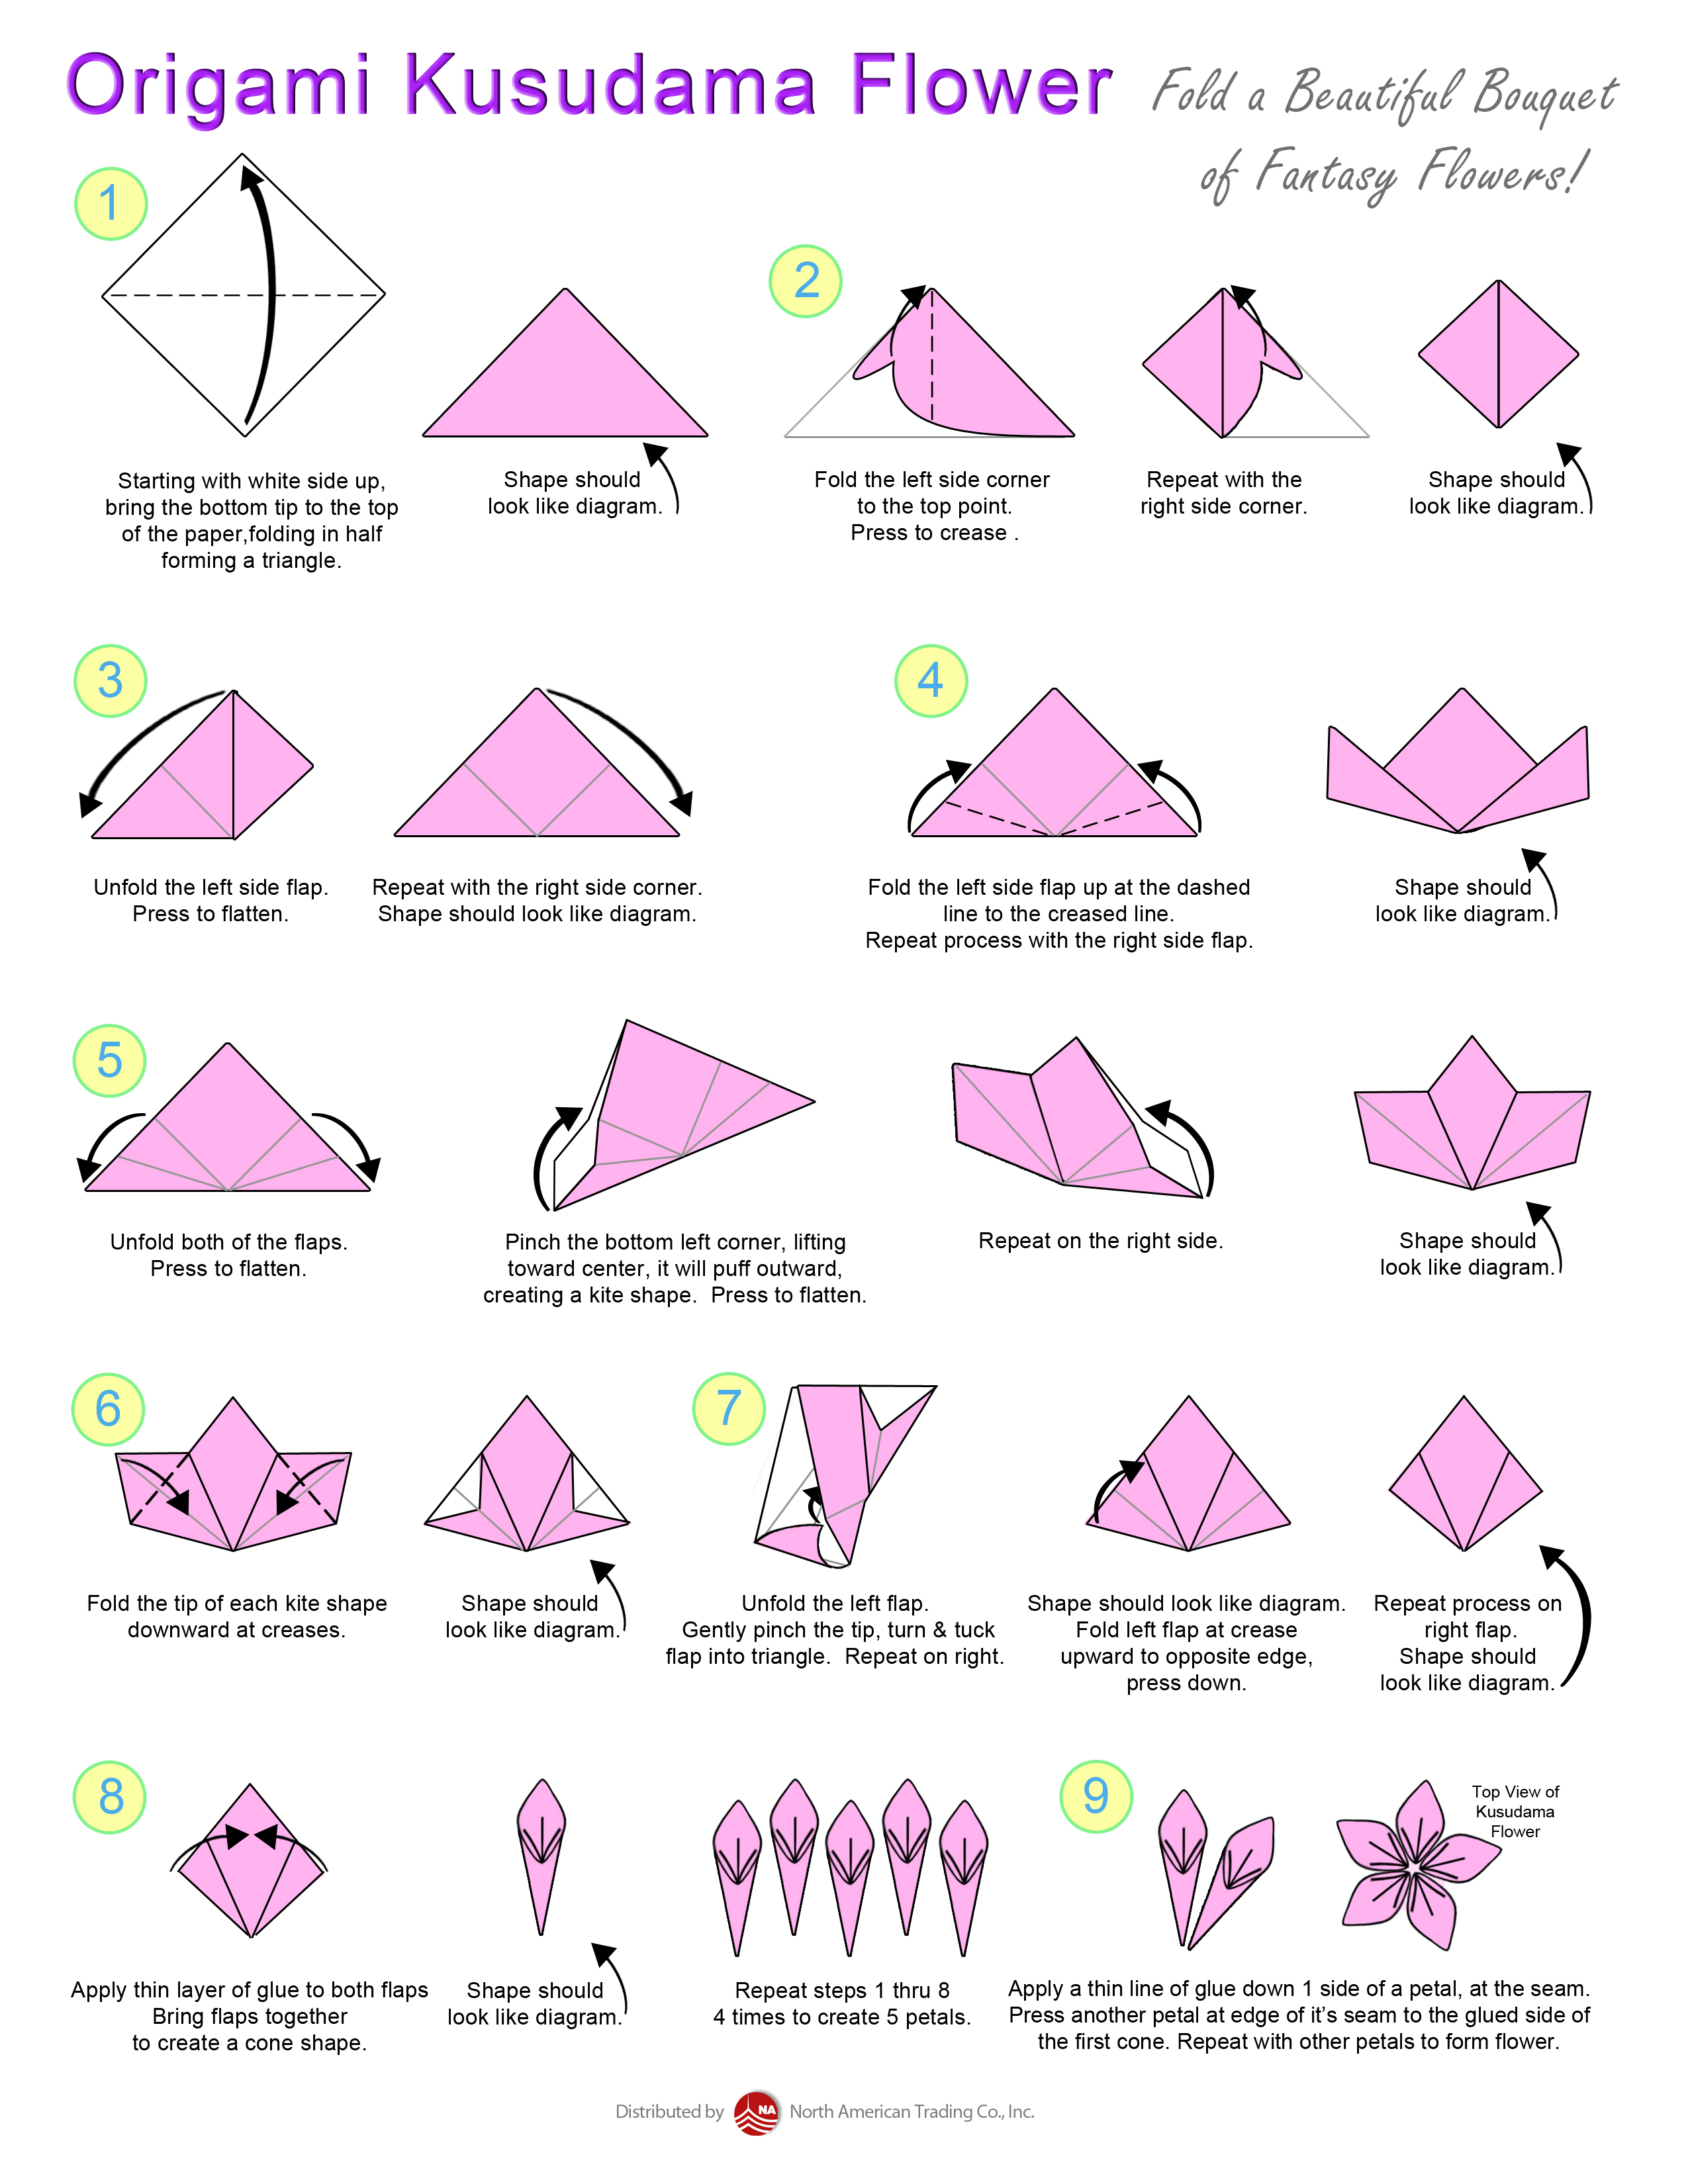 Как сделать оригами белый цветок: Самые легкие цветы из бумаги. Своими руками пошагово + 232 фото